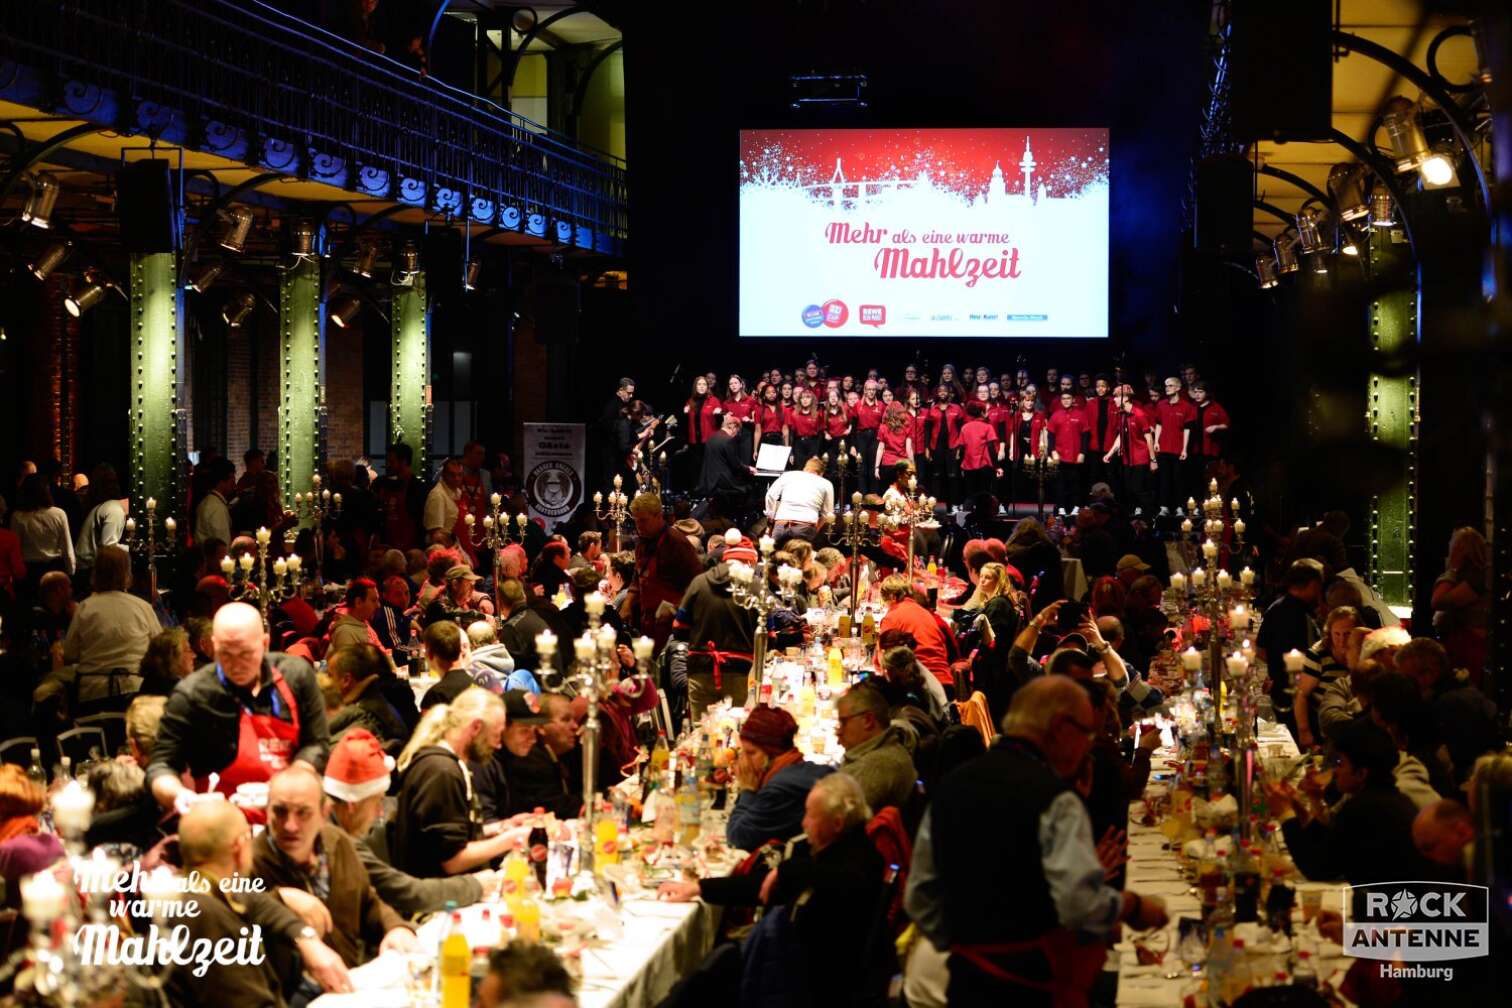 Foto der Hamburger Bedürftigenweihnachtsfeier "Mehr als eine warme Mahlzeit" in der Fischauktionshalle